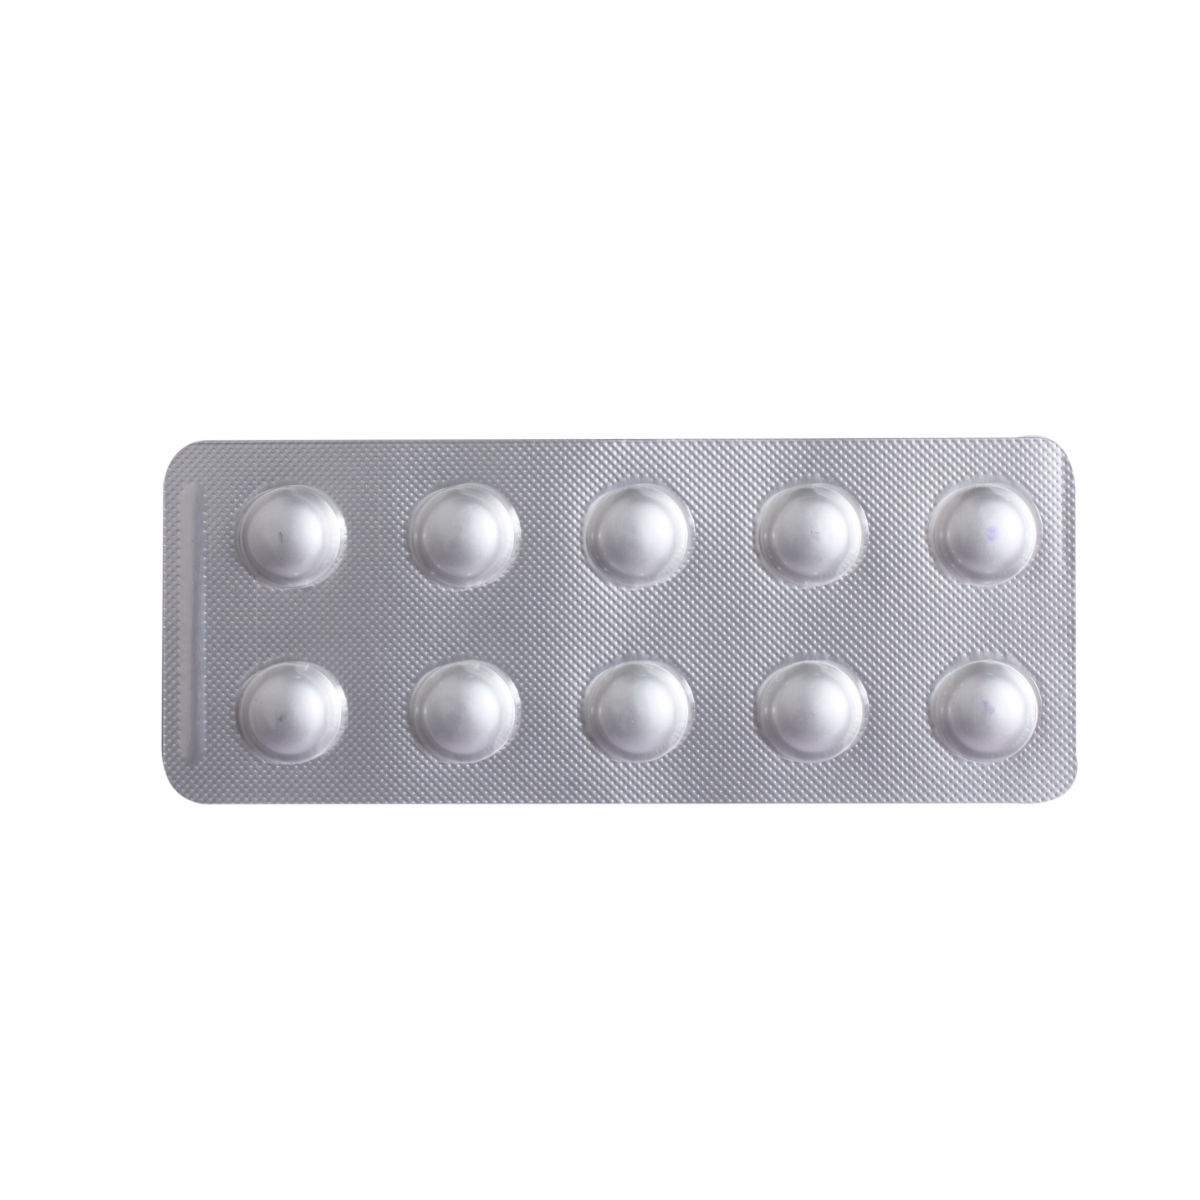 Buy Scleteri 14 mg Tablet 10's Online